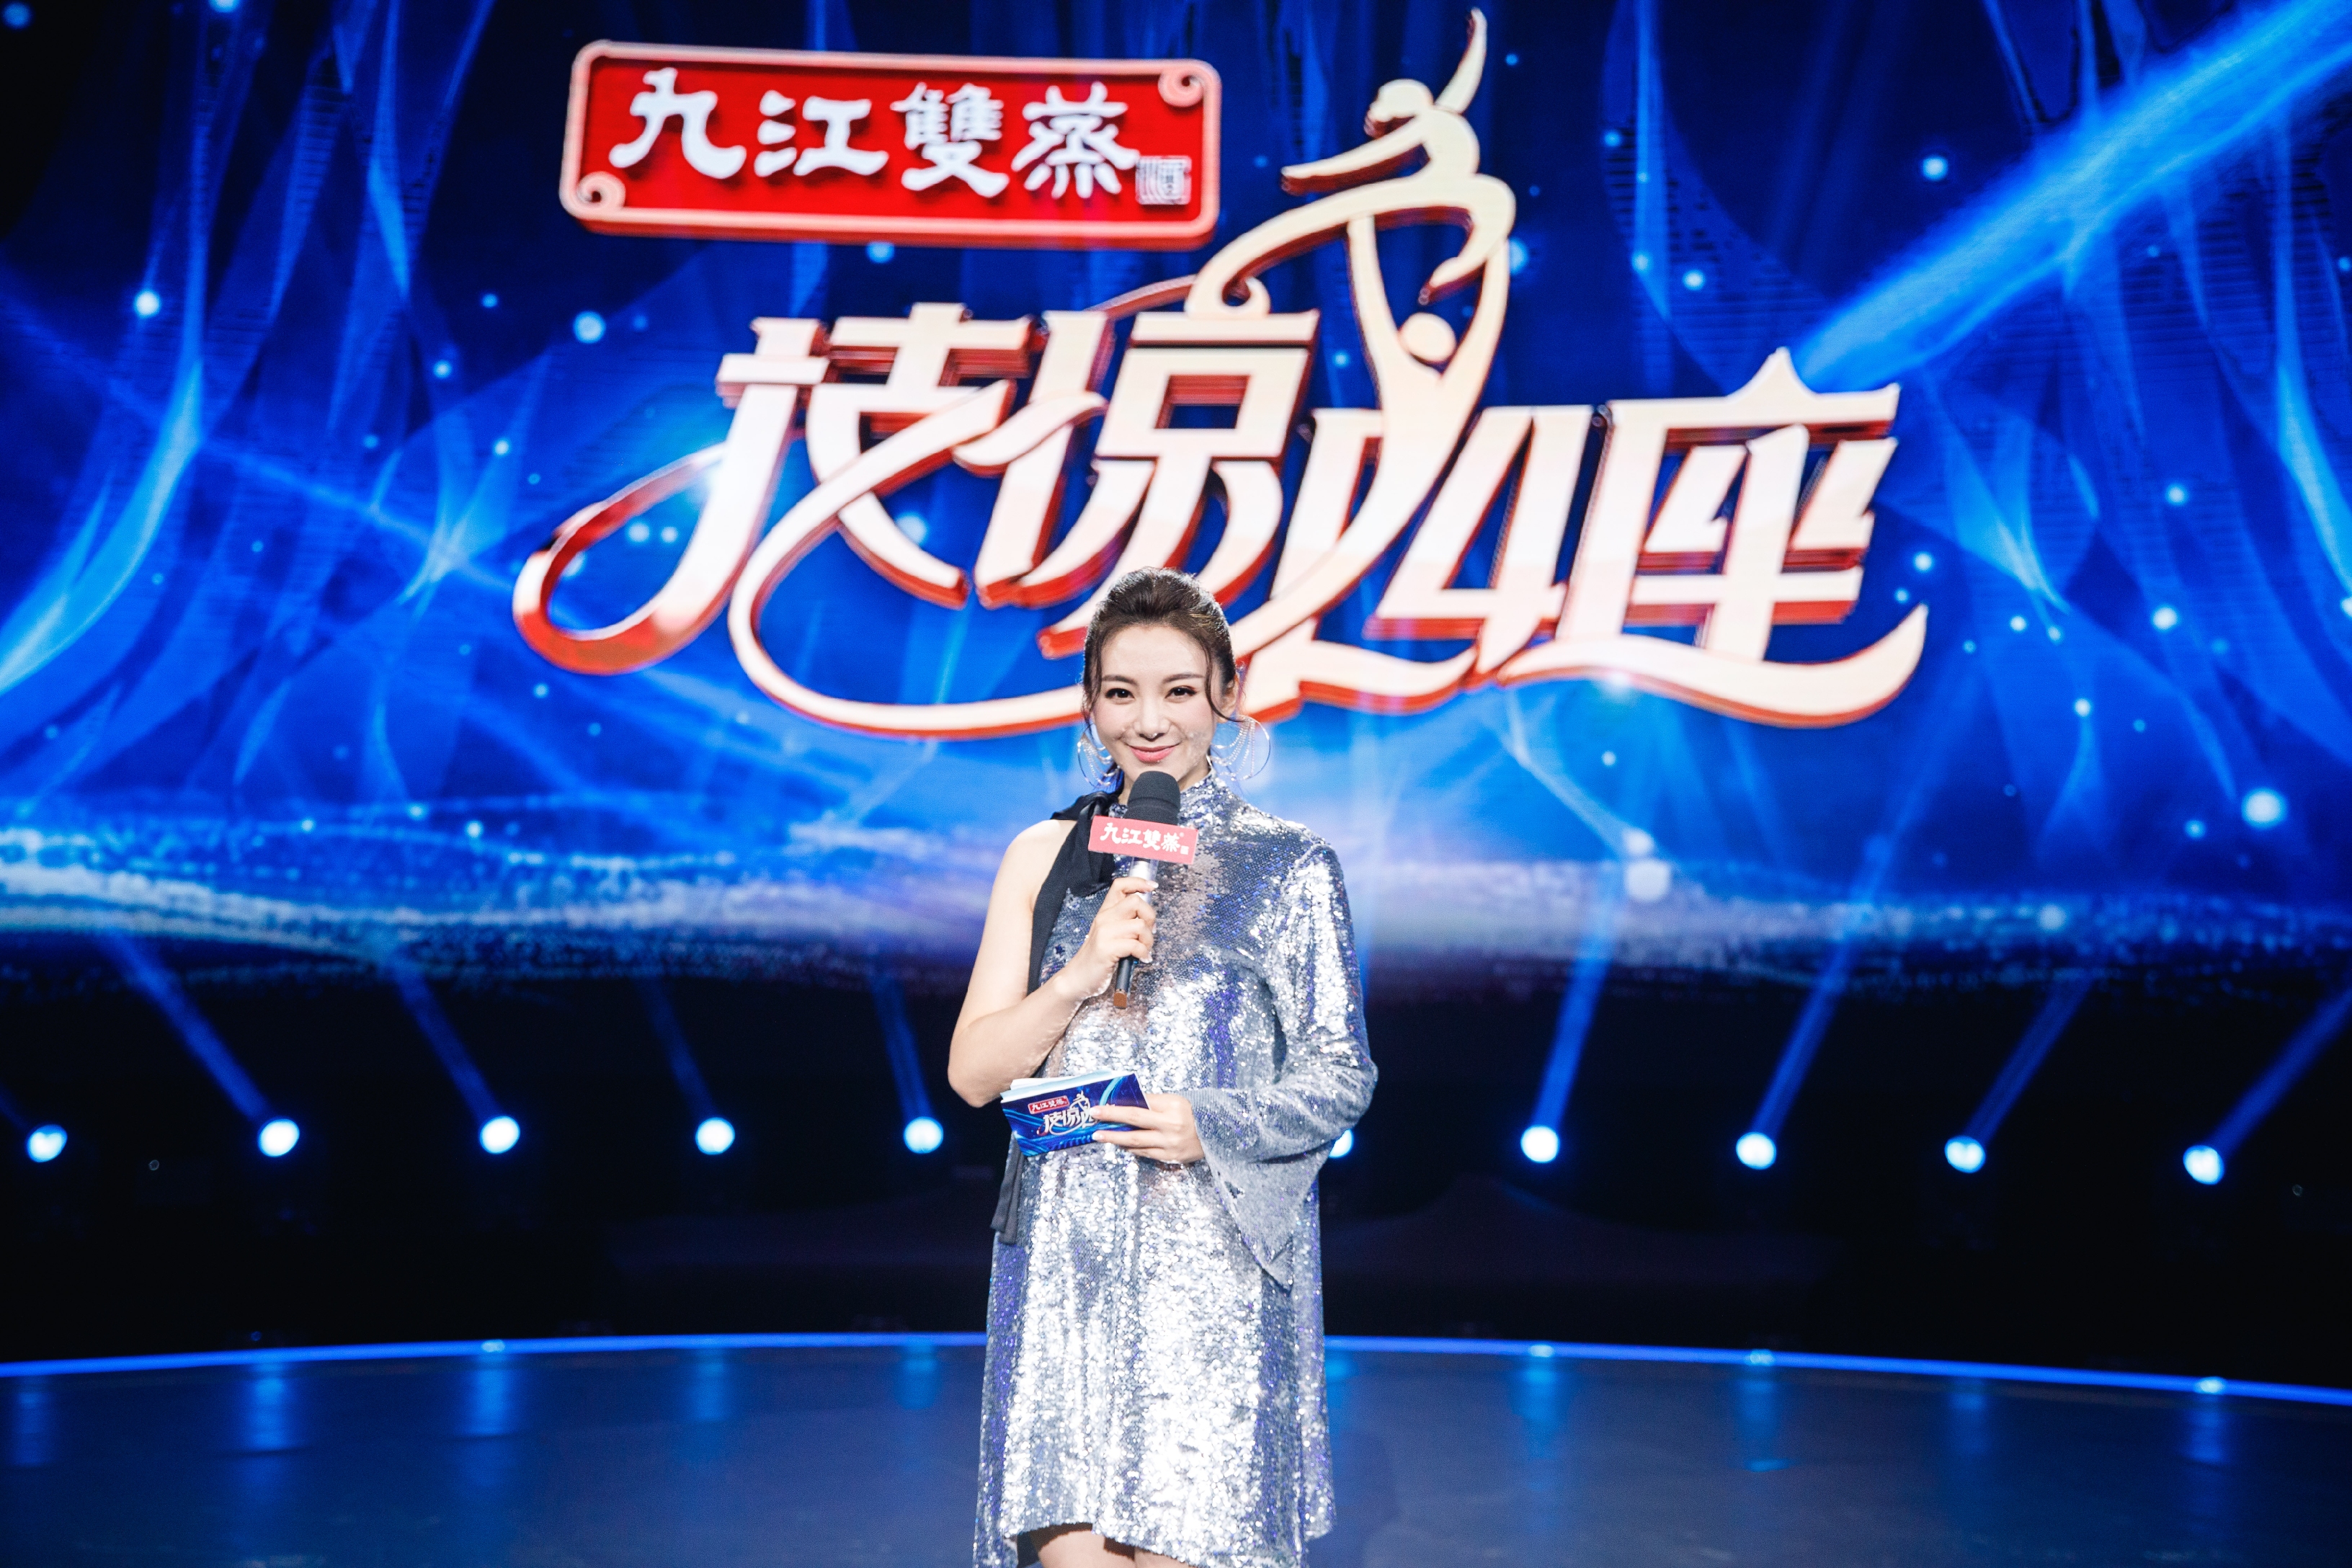 广东卫视知名主持人李佳,拥有多年丰富的综艺主持经验,本次担任《技惊